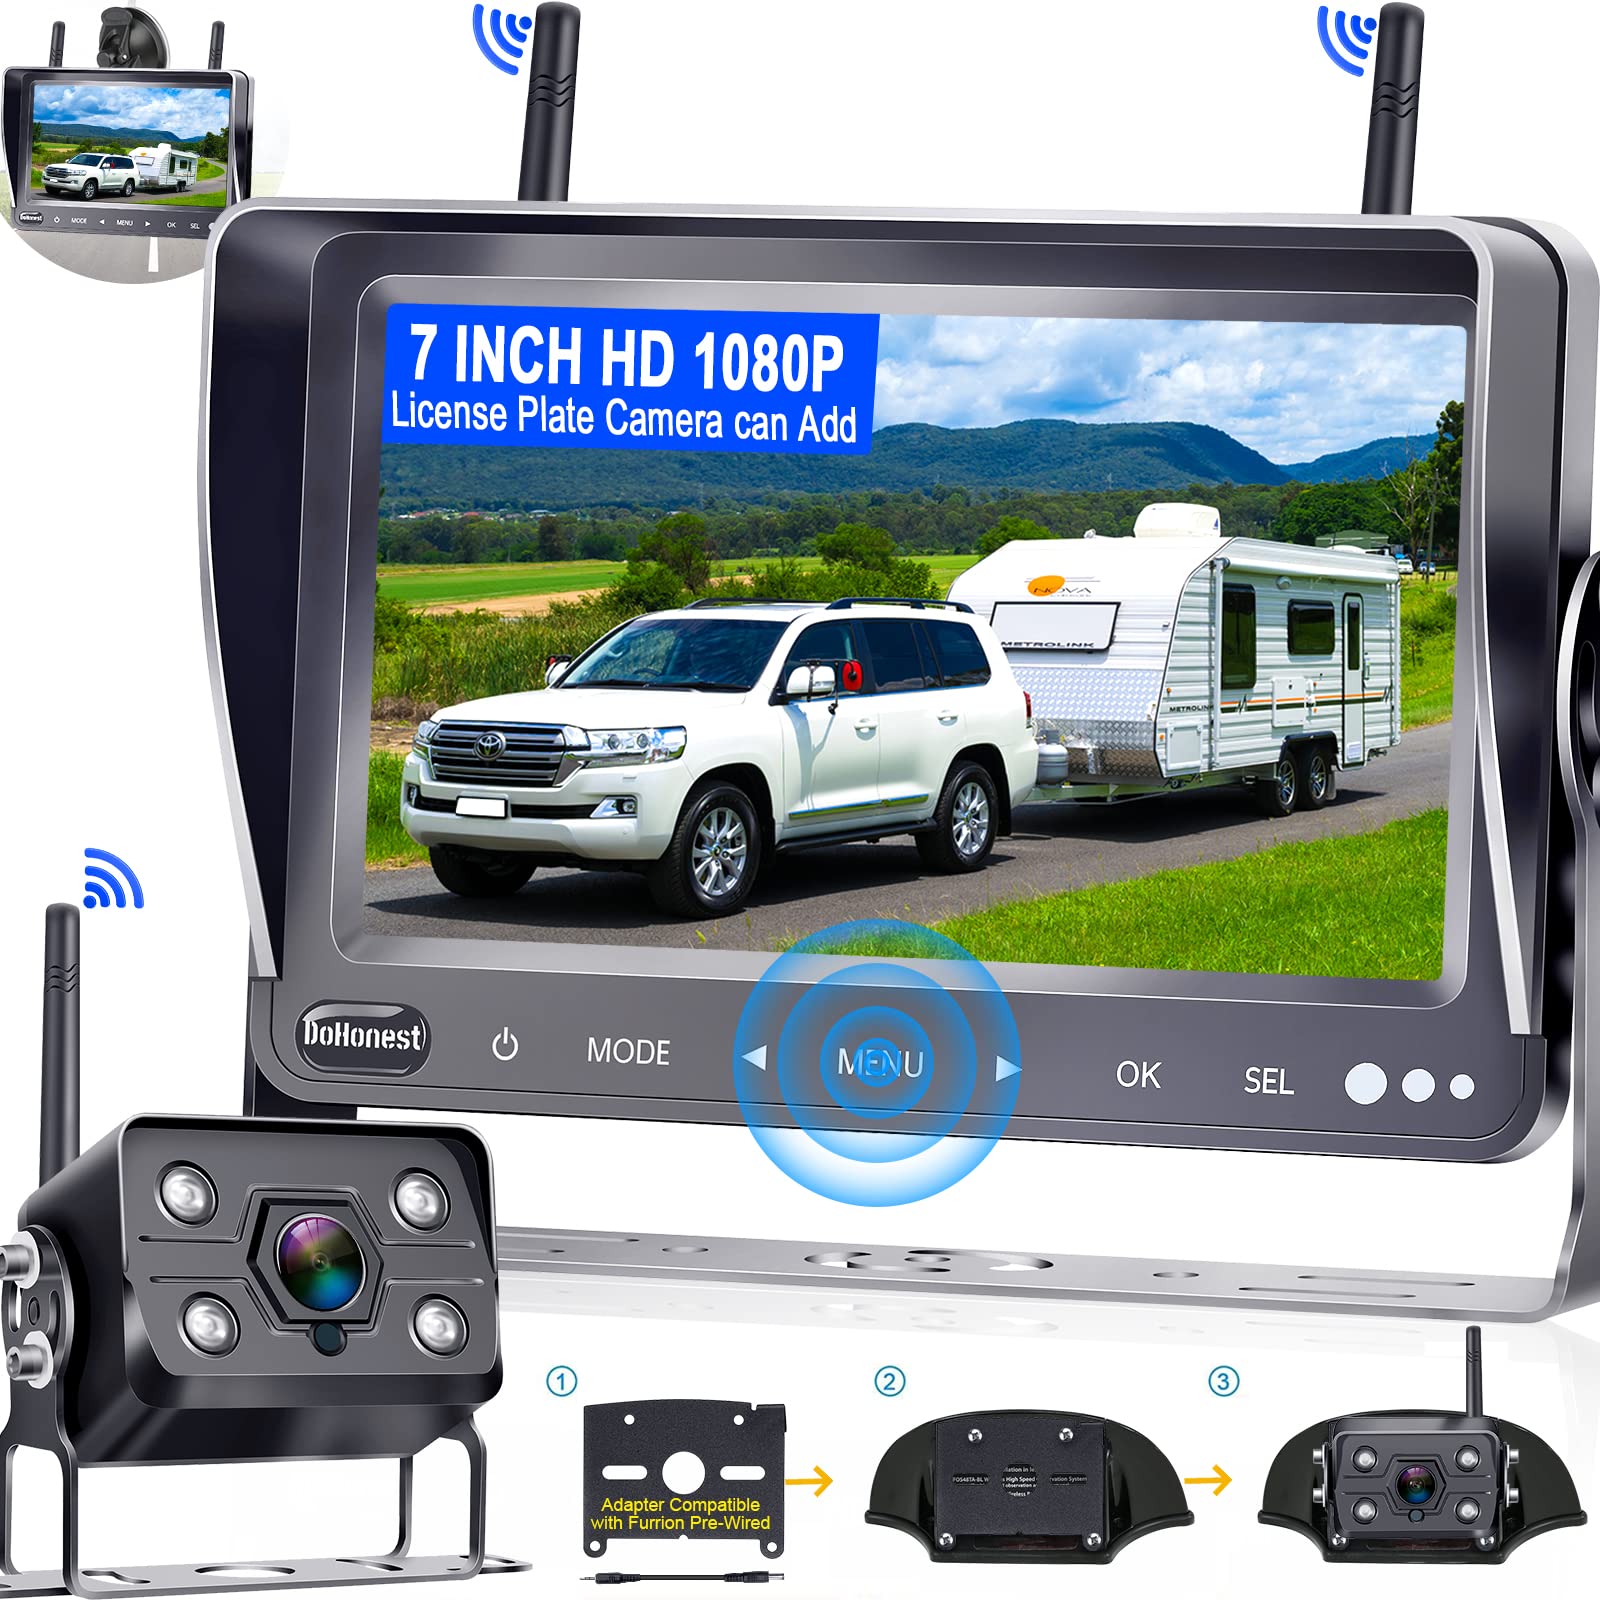  Dohonest Caméra de recul RV sans fil HD 1080P 7'' Kit de moniteur DVR de vue arrière 4 canaux Bluetooth adaptateur de caméra de recul pour remorque Furrion pré-câblé RVs camion van vision nocturne...